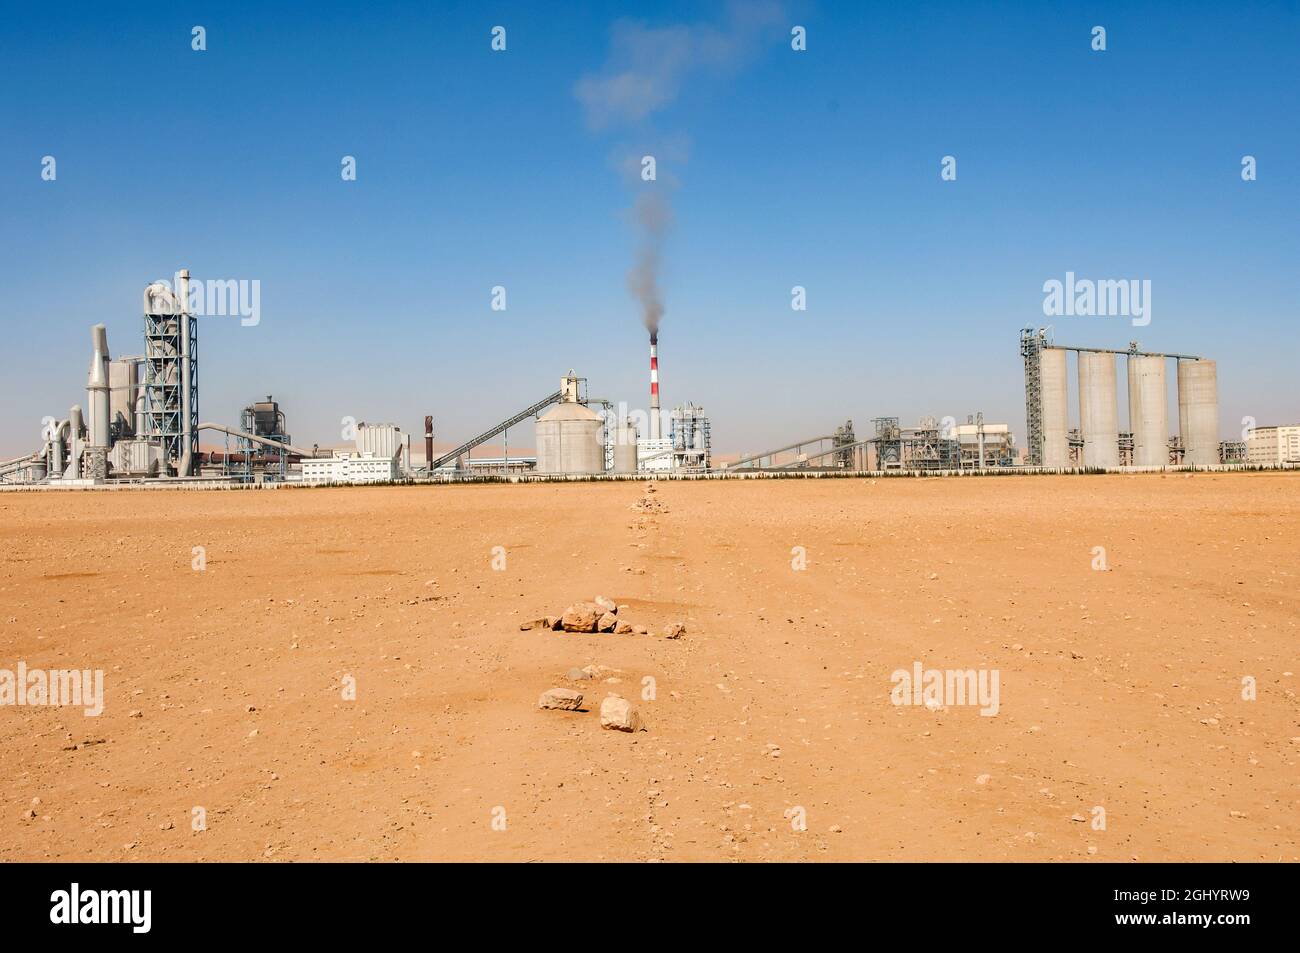 Raqqa, Syrie. 16 août 2011. Une vue de l'usine de ciment Lafarge dans le désert syrien près de la ville de Raqqa.l'entreprise industrielle française, Lafarge perd la tentative de rejeter l'affaire des "crimes contre l'humanité" en Syrie. (Image de crédit : © John Wreford/SOPA Images via ZUMA Press Wire) Banque D'Images